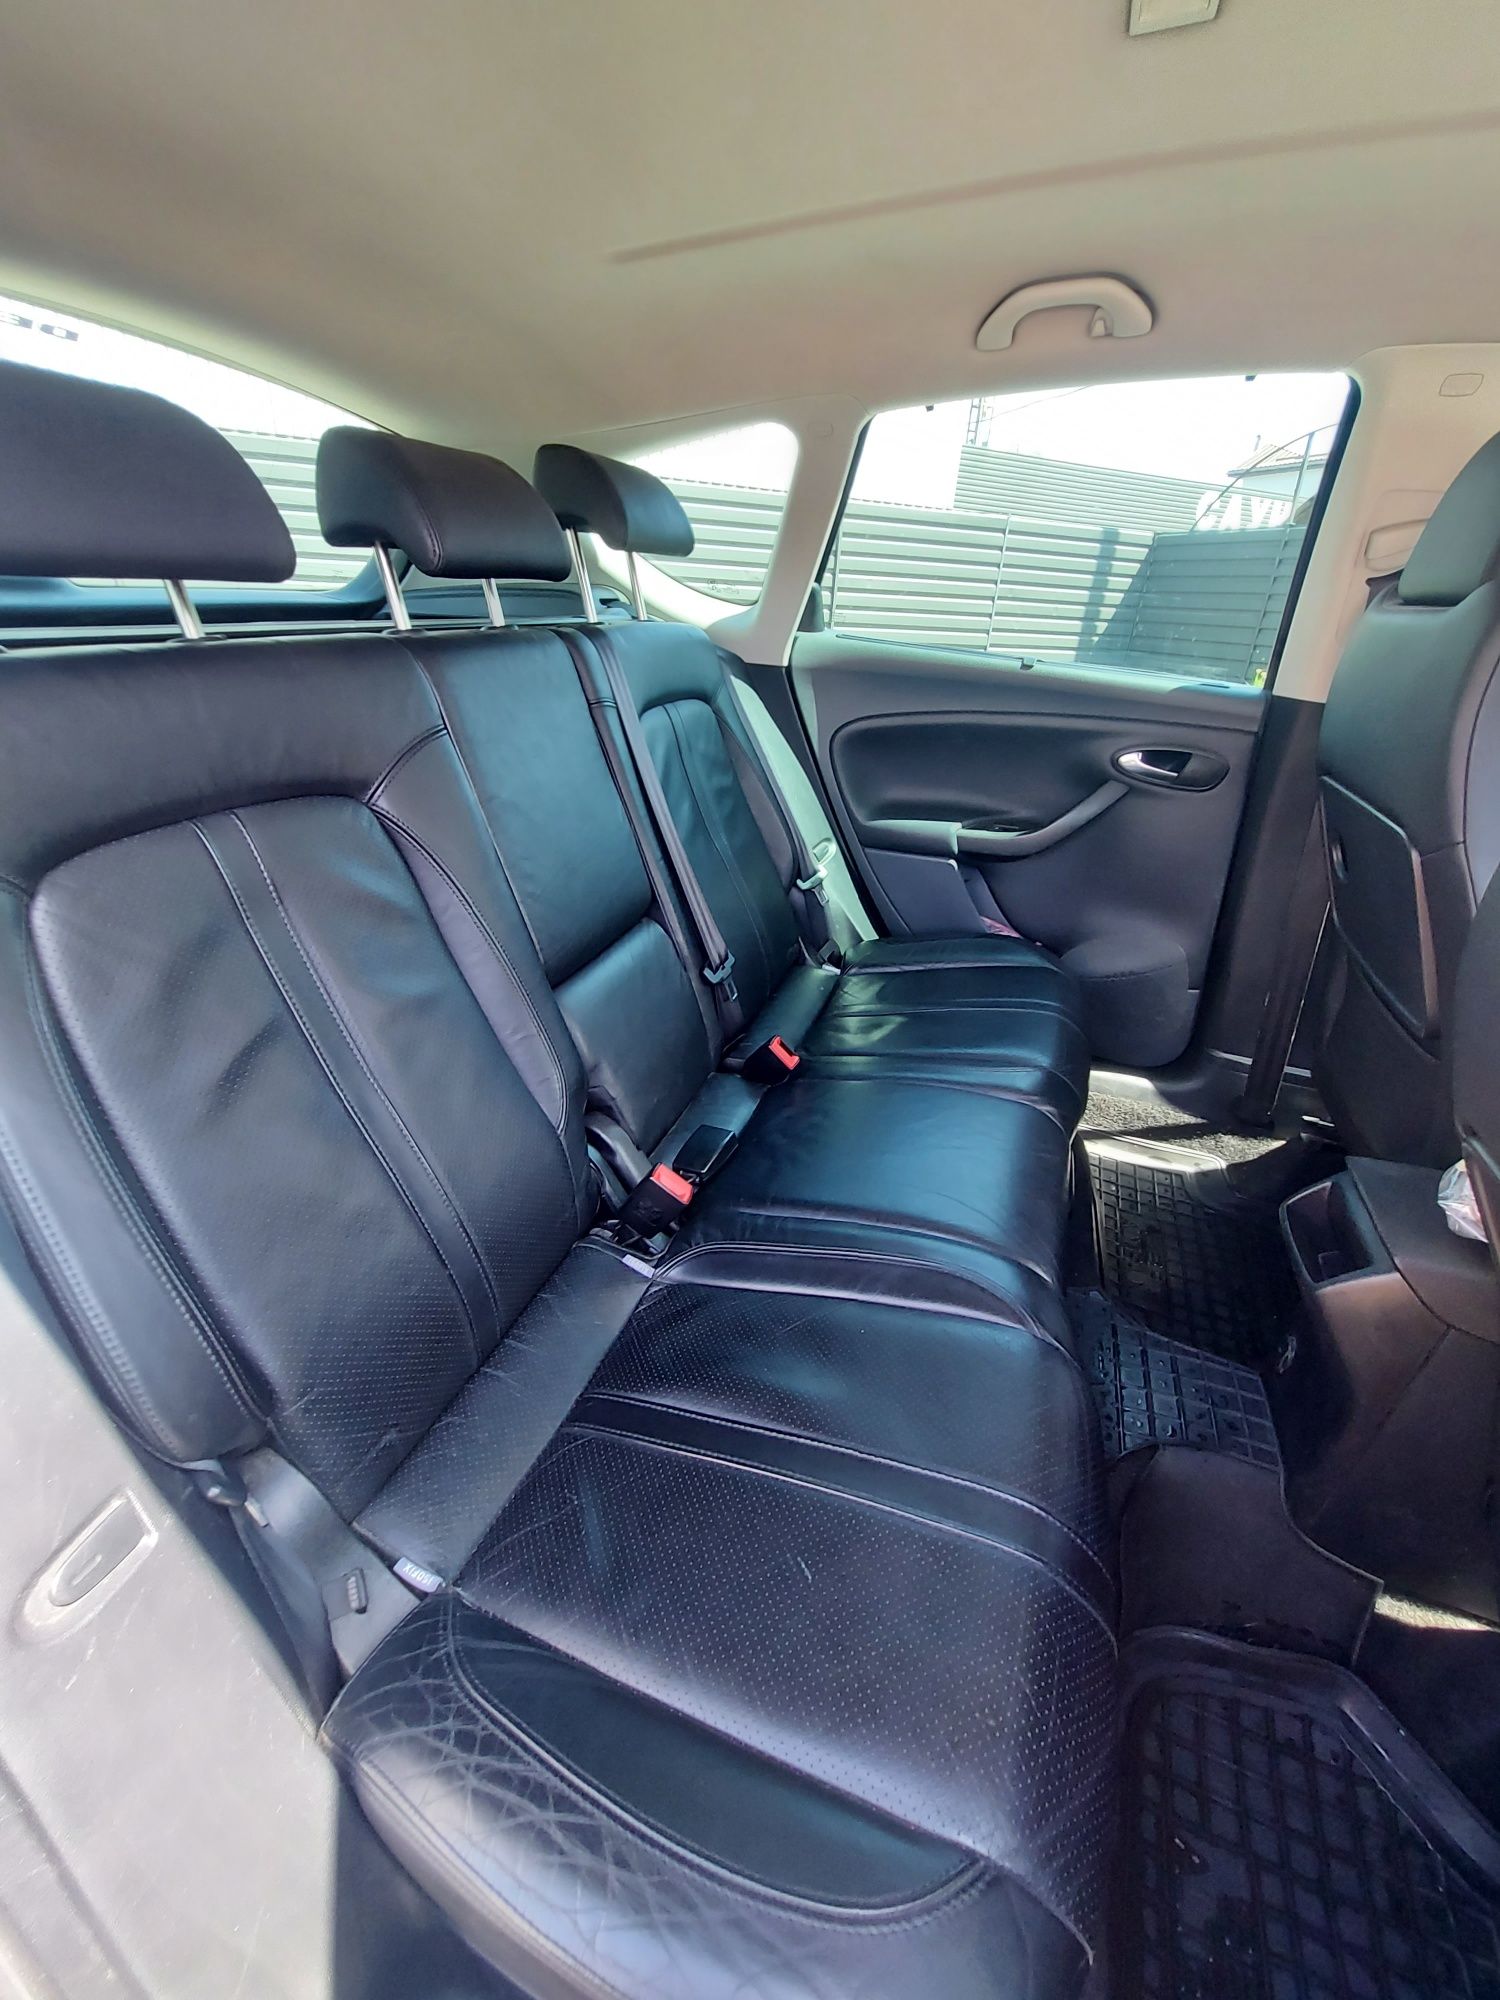 Продам Seat Altea XL 2009г  1.9 дизель